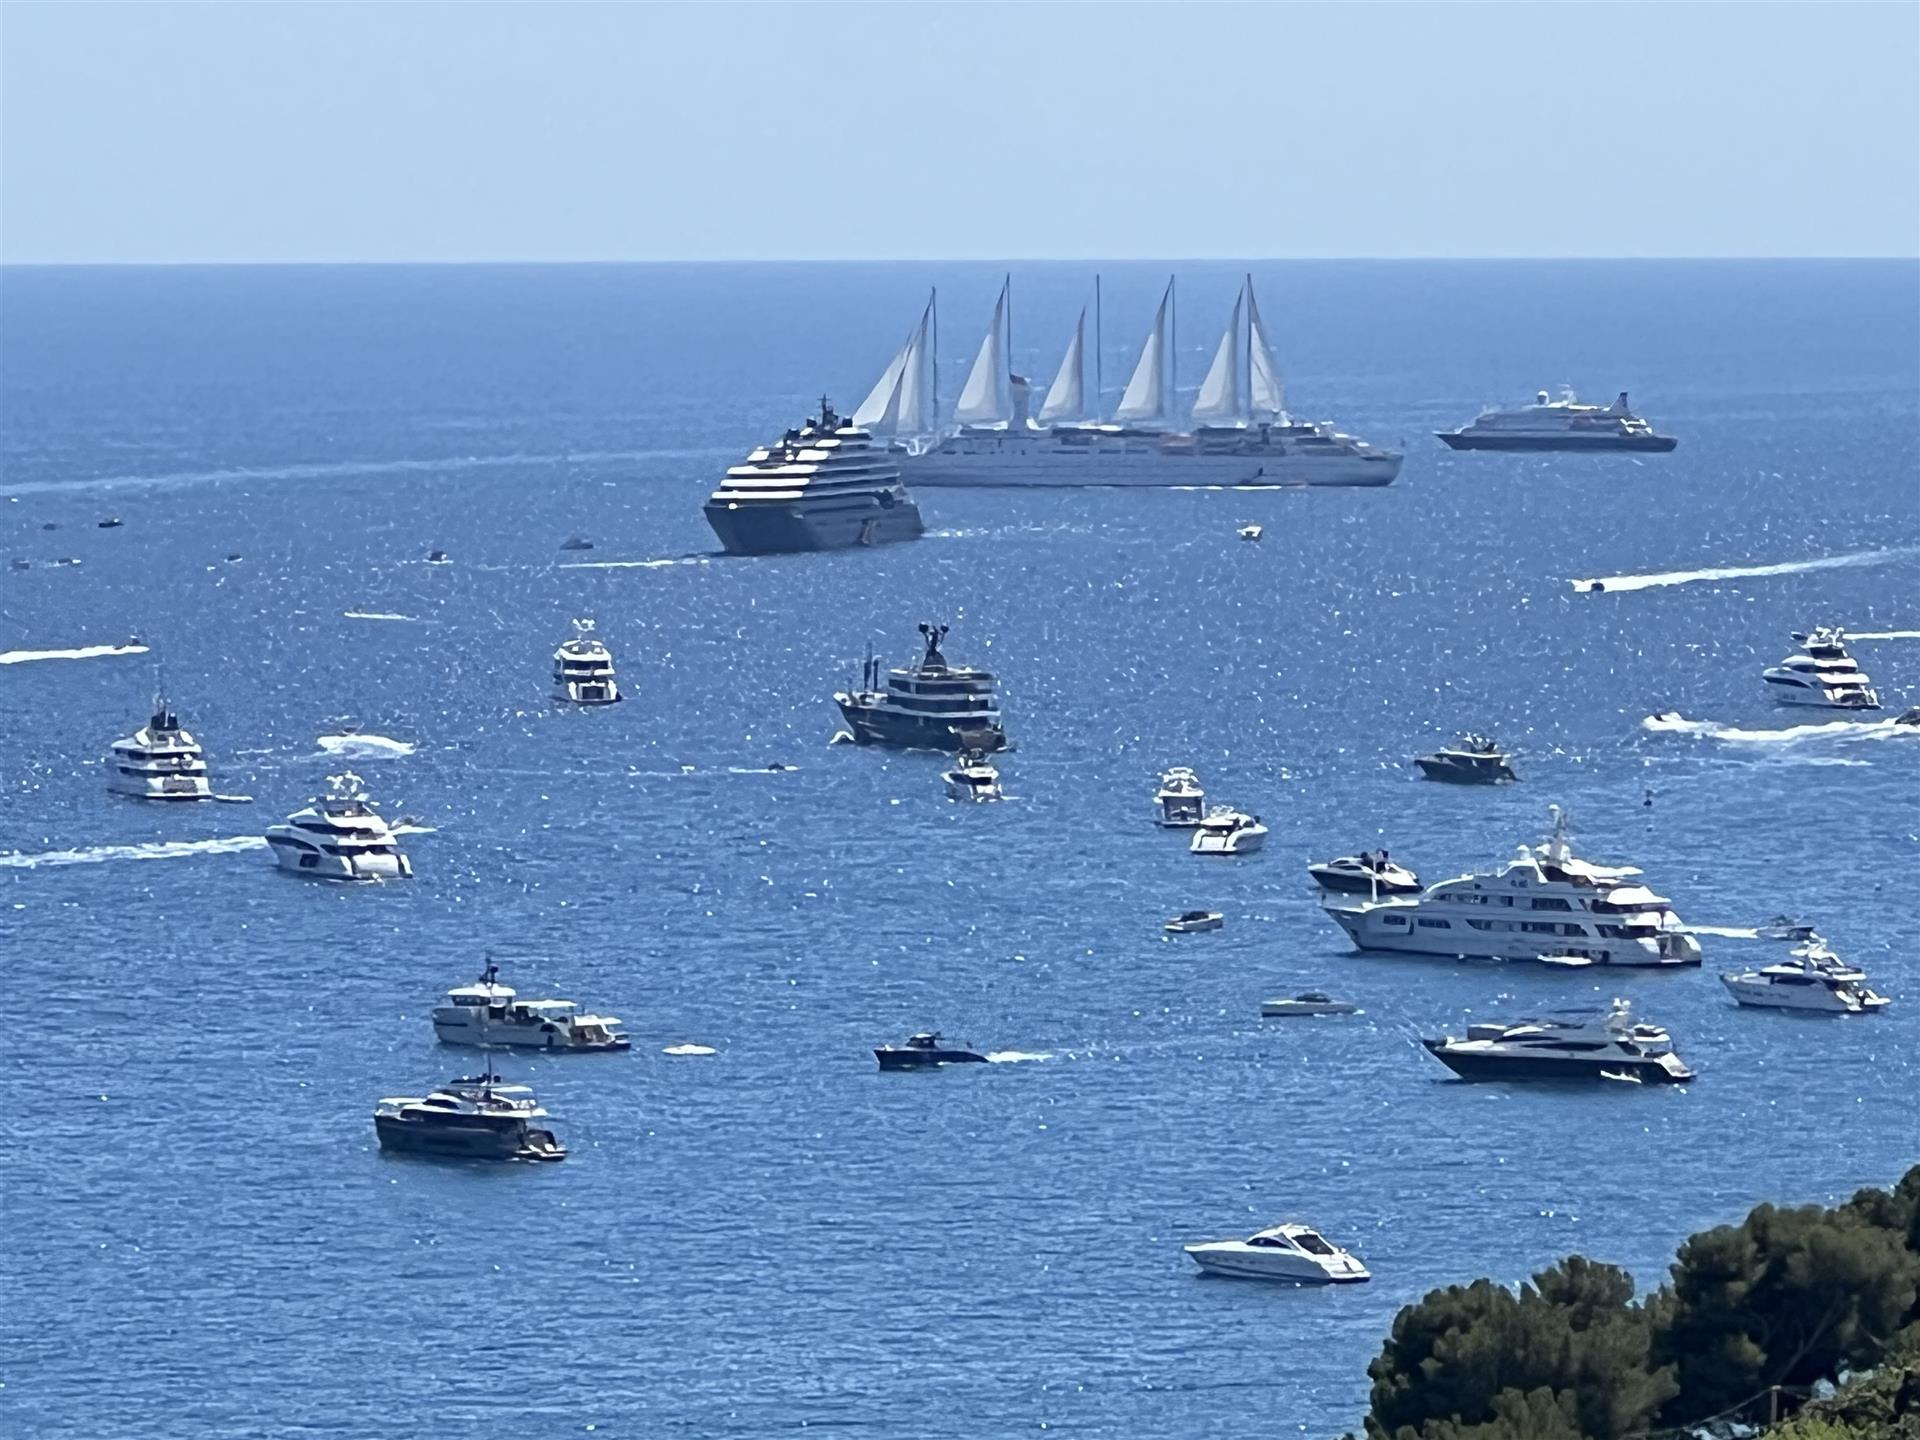 Monaco and beaches next door, sea view